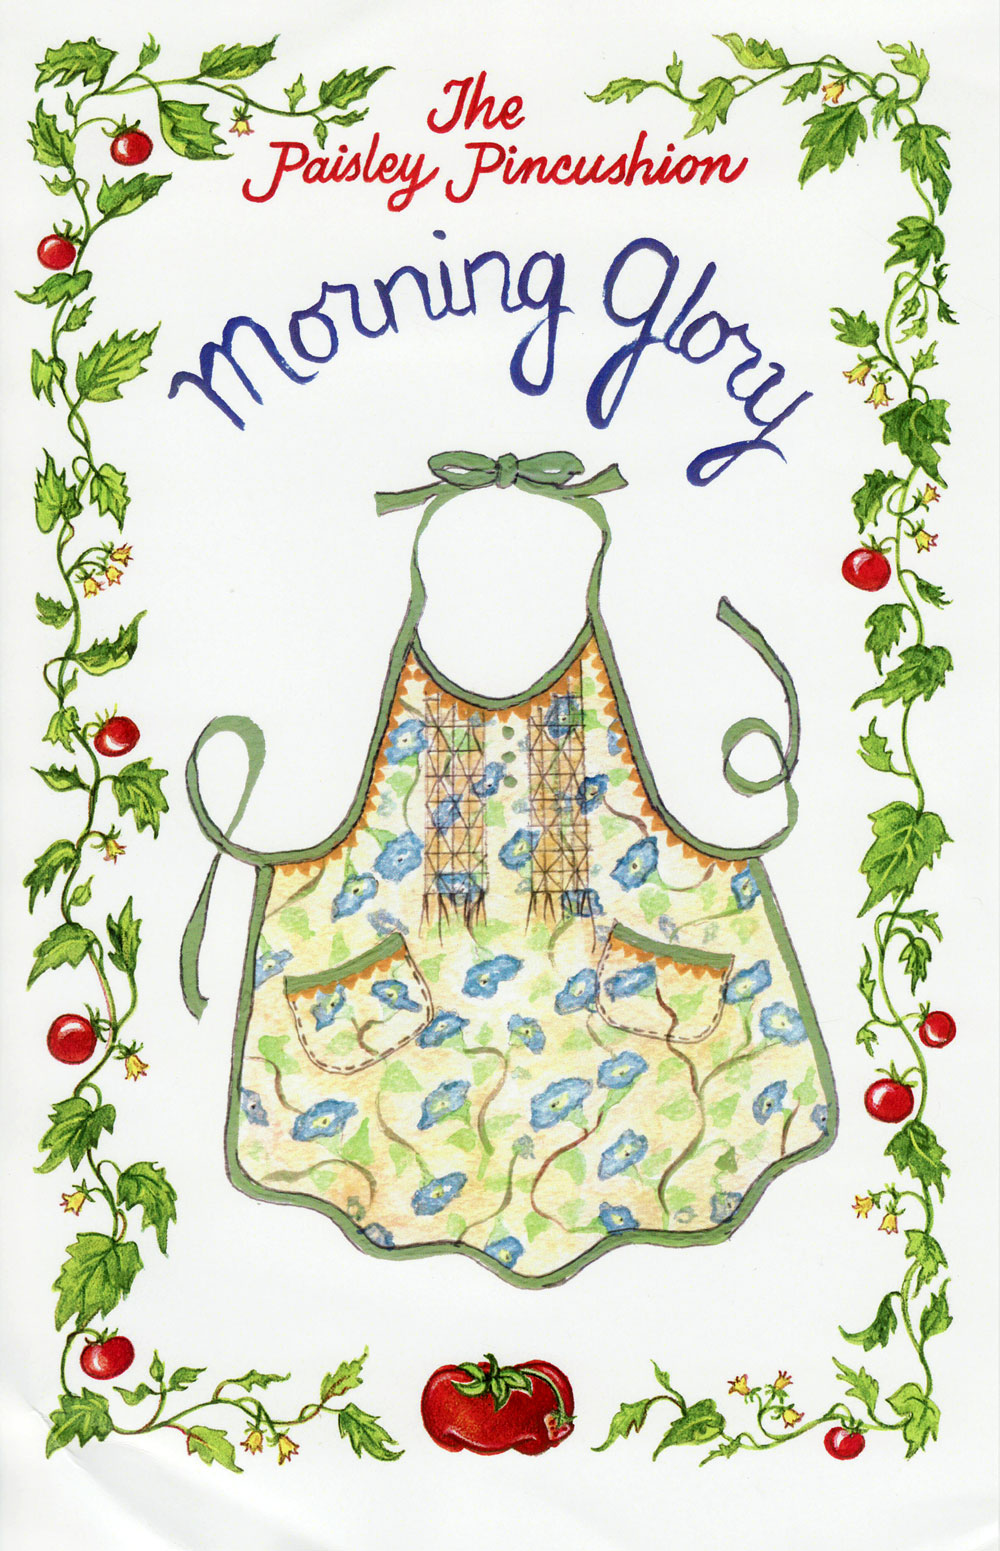 morning-glory-apron-sewing-pattern-paisley-pincushion-front